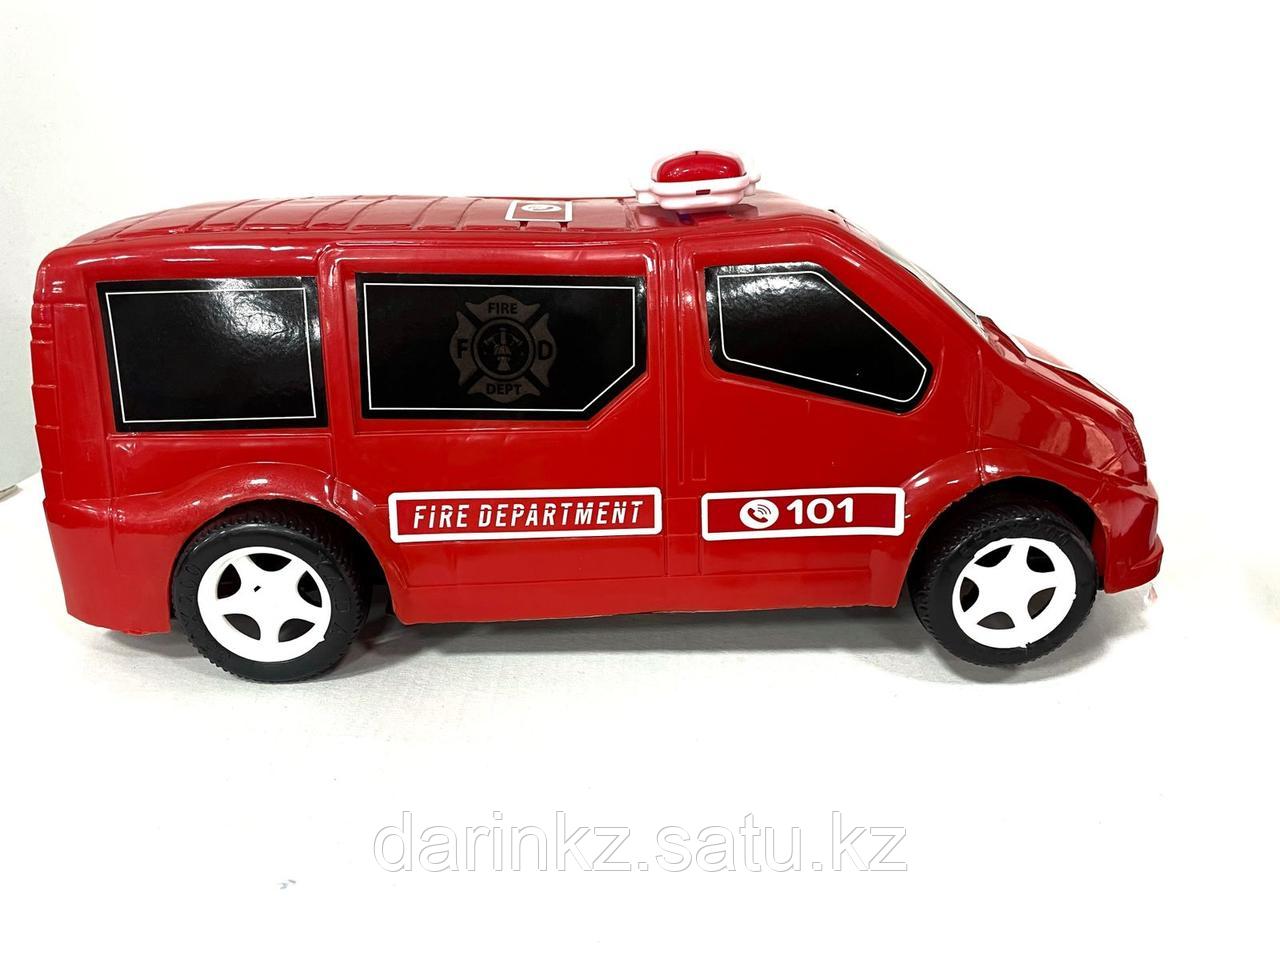 Пластмассовая игрушечная машина пожарная помощь  Модель  КМР 501